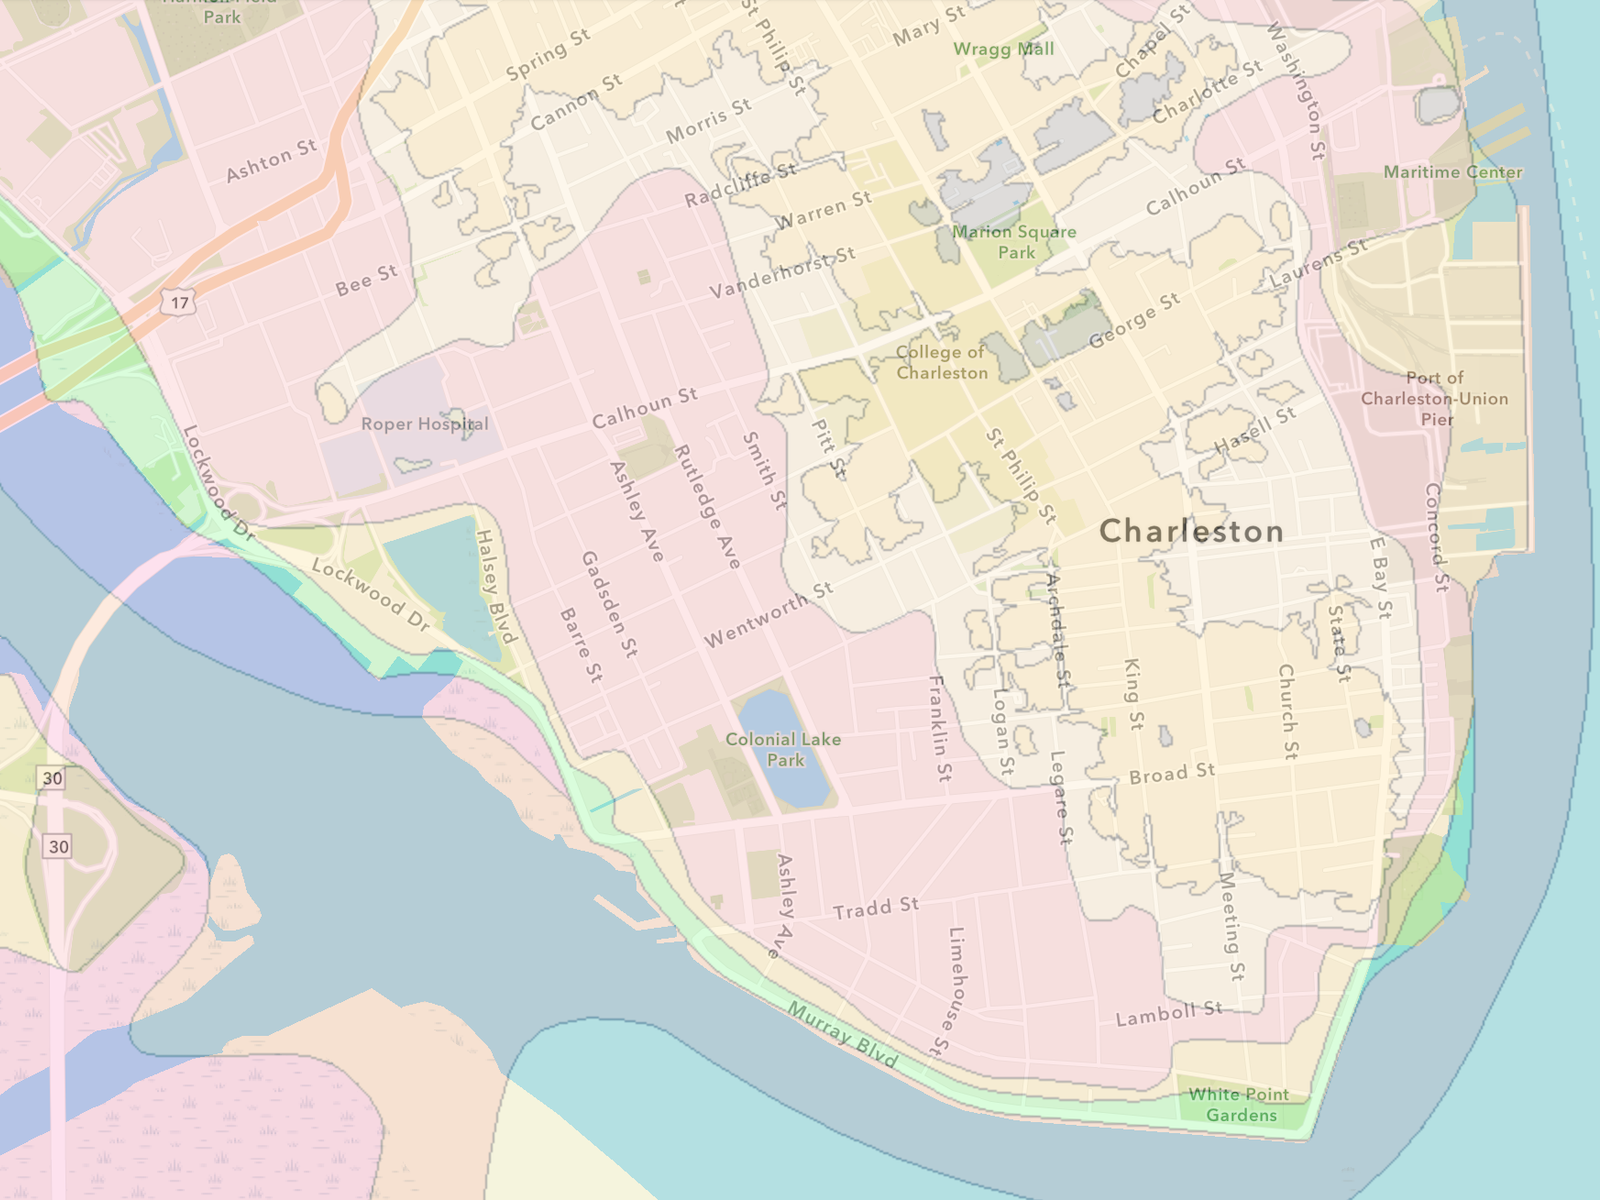 louisiana flood zone map